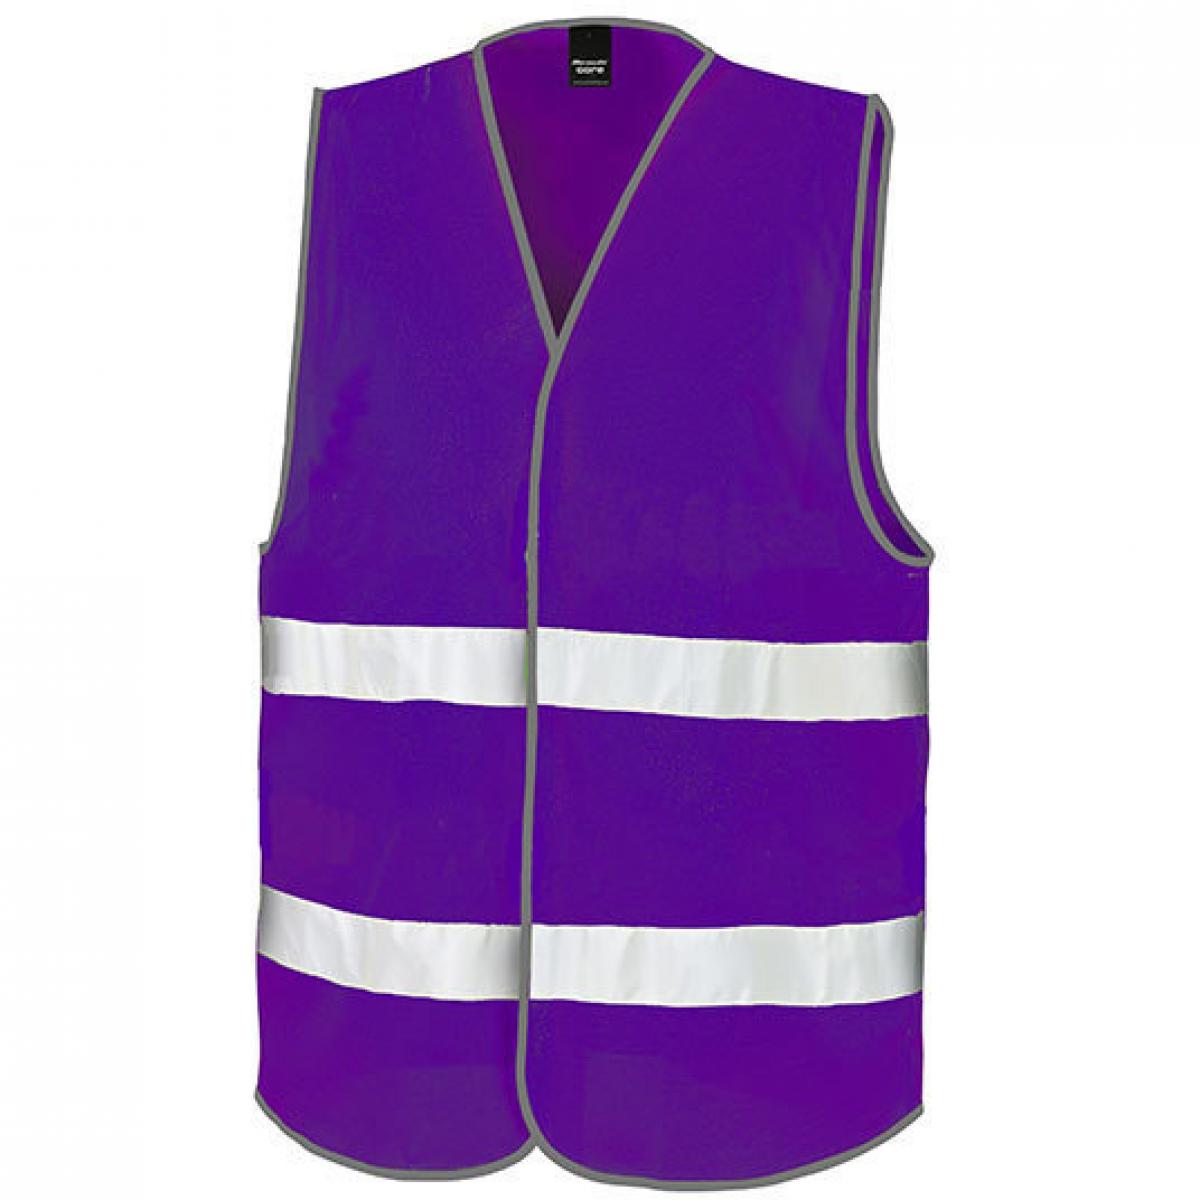 Hersteller: Result Core Herstellernummer: R200X Artikelbezeichnung: Motorist Safety Vest / ISOEN20471:2013, Klasse 2 Farbe: Purple